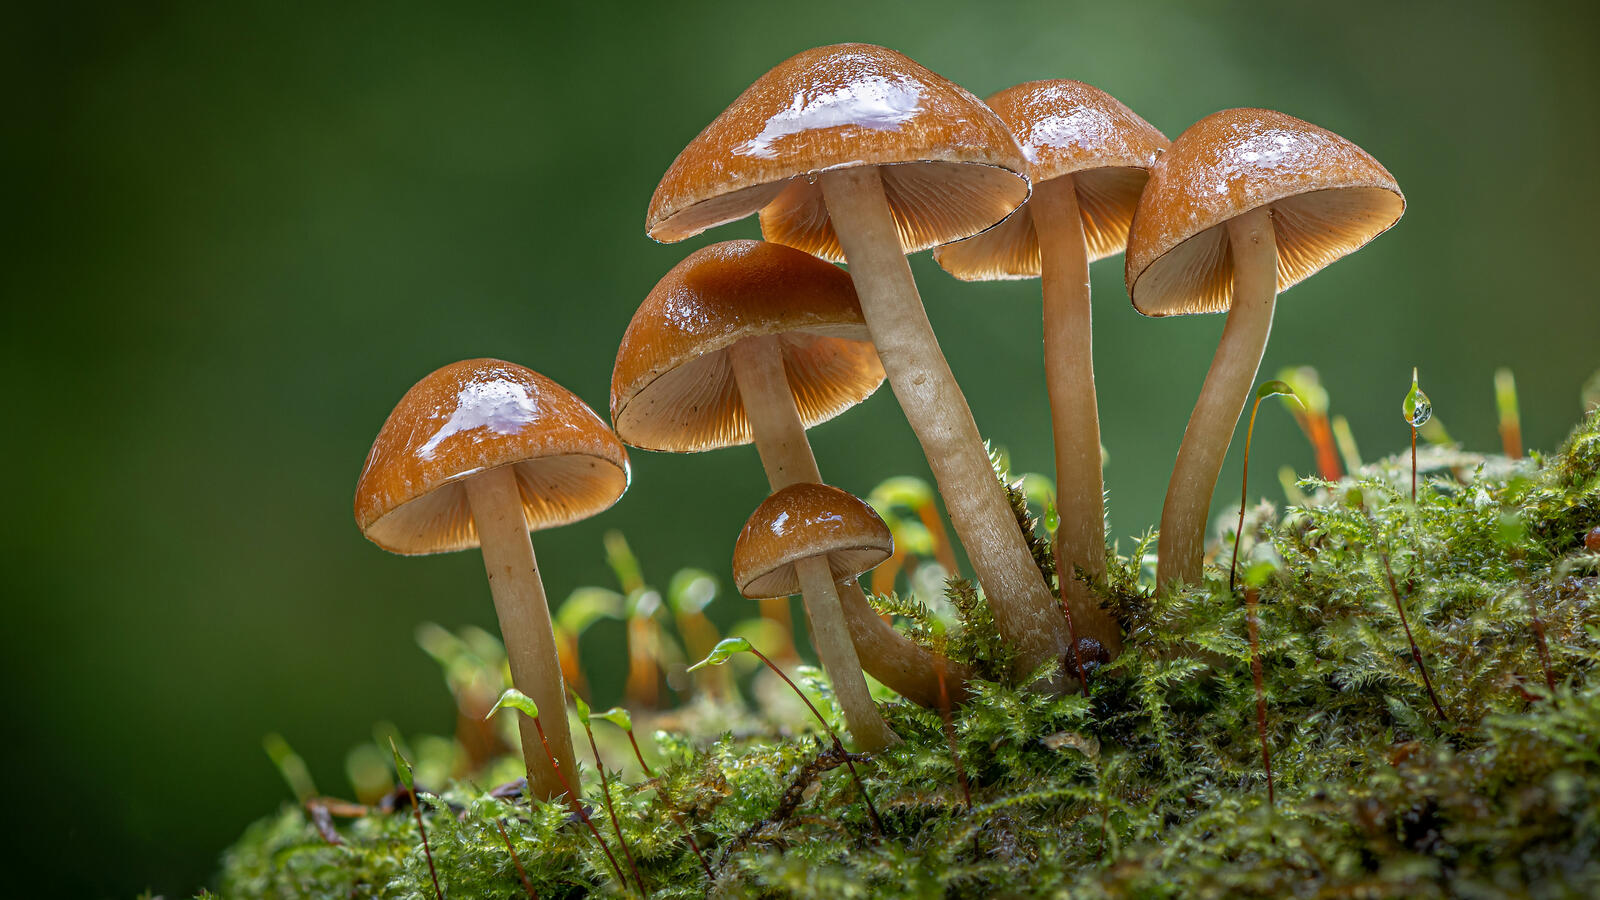 Бесплатное фото Несъедобные грибы растущие на зеленом мохе